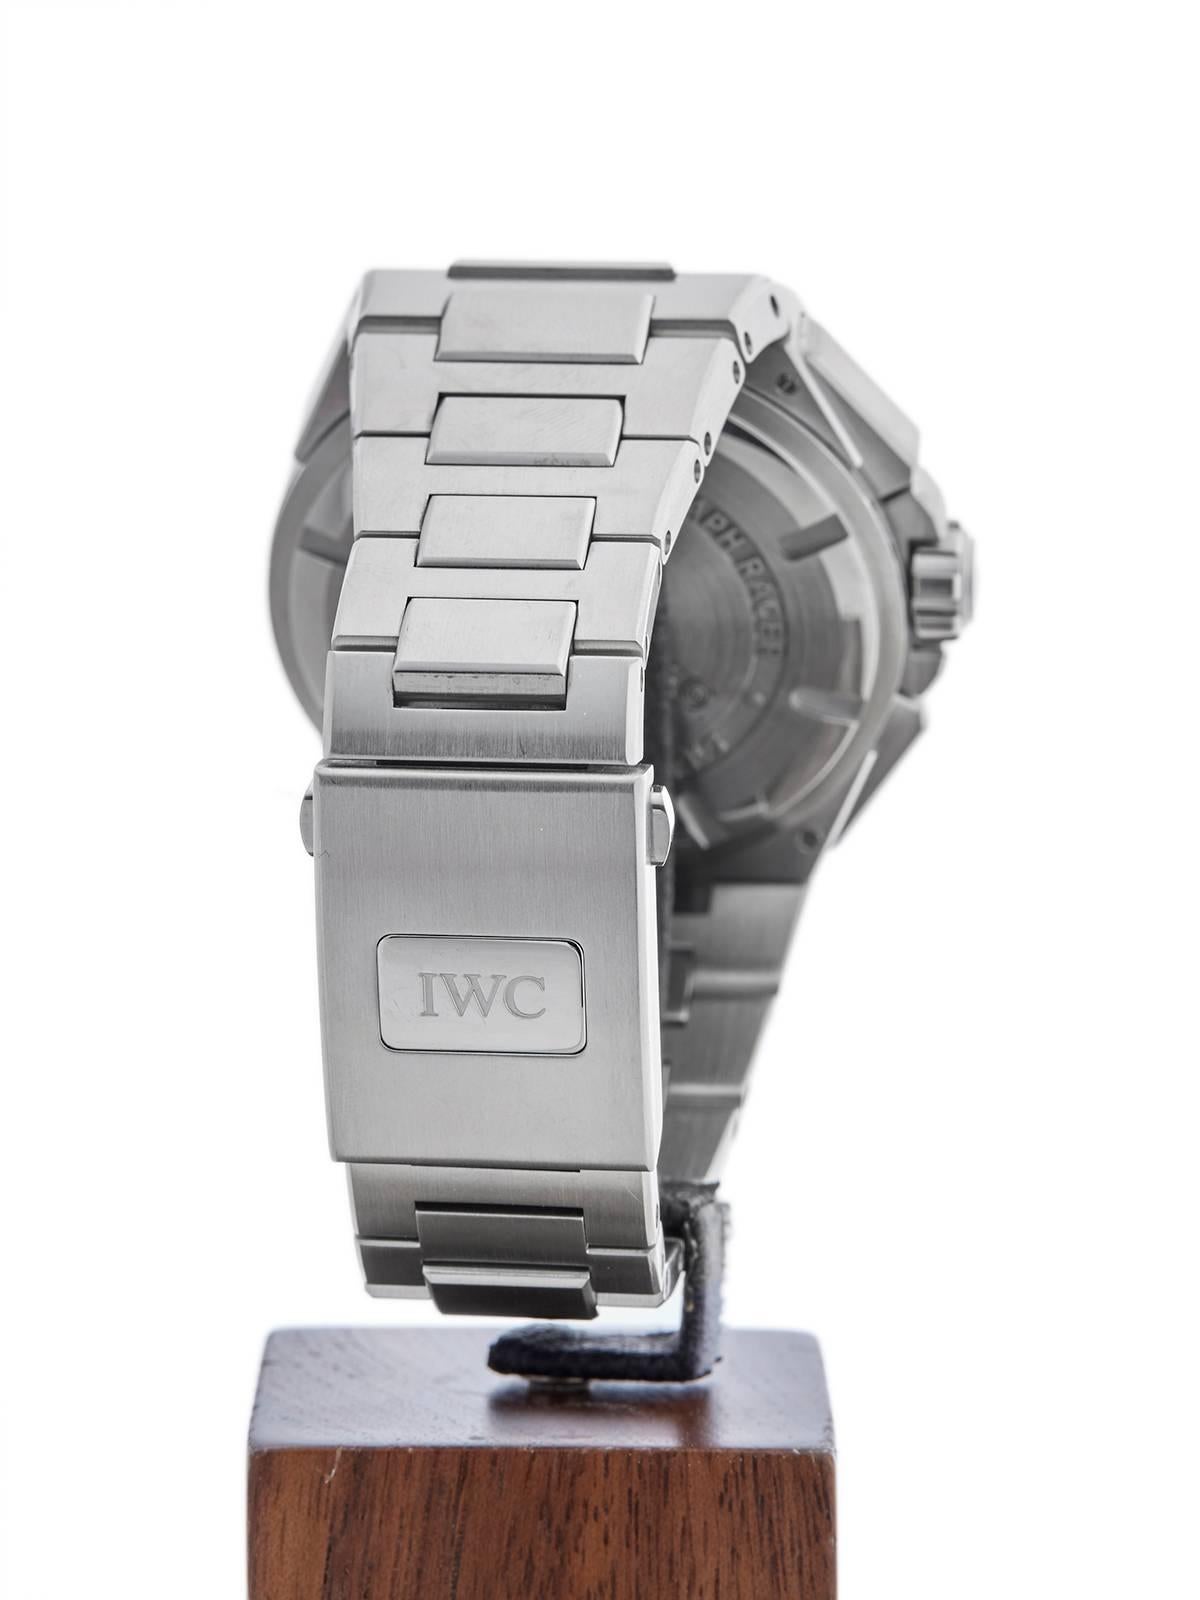  IWC stainless steel Ingenieur Automatic Wristwatch 4